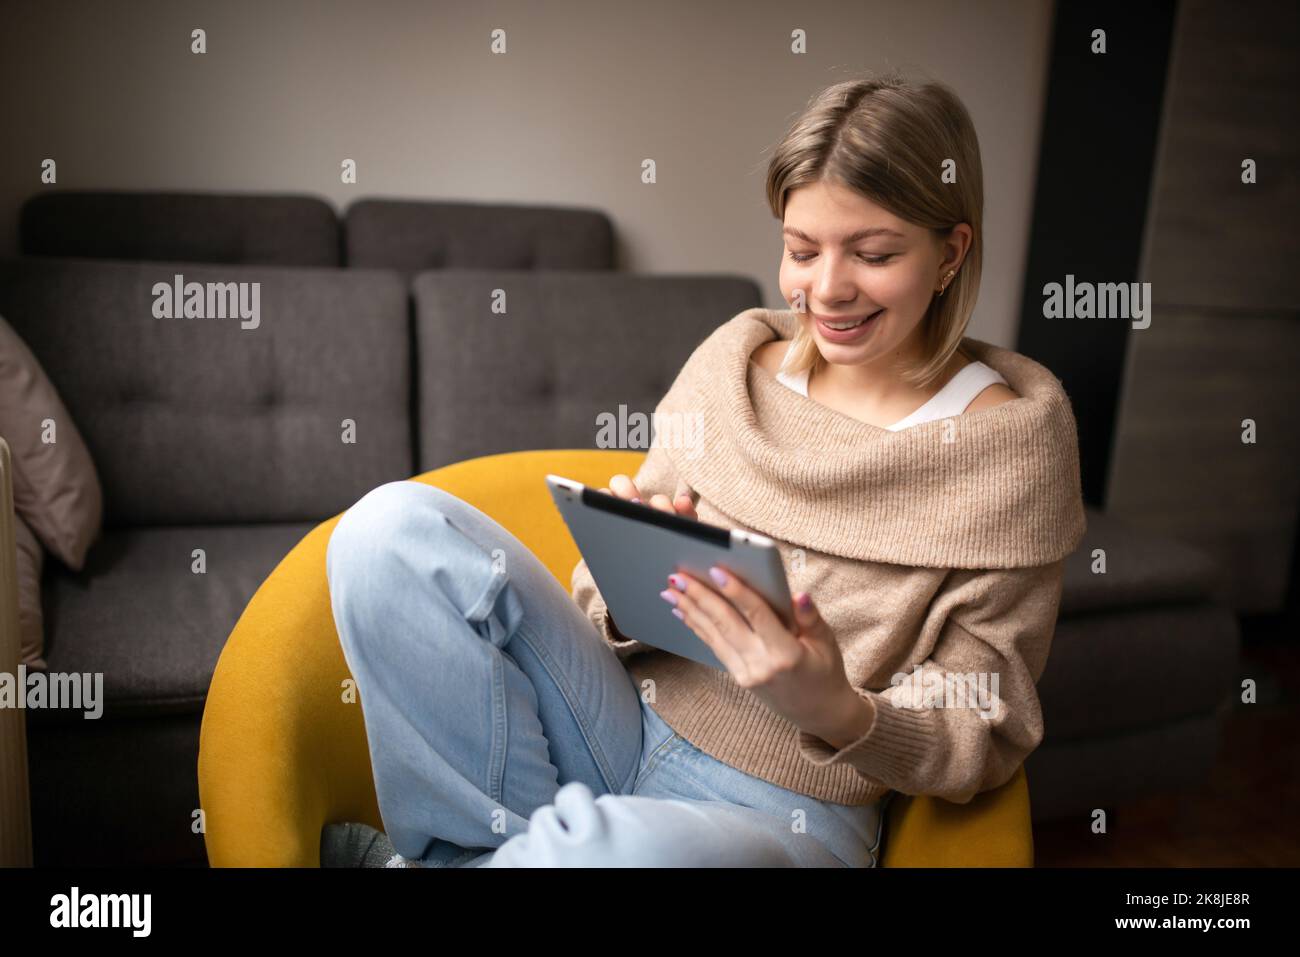 Une femme heureuse et belle qui regarde des vidéos ou qui profite de contenus de divertissement sur une tablette, assise sur le canapé de la maison. Banque D'Images